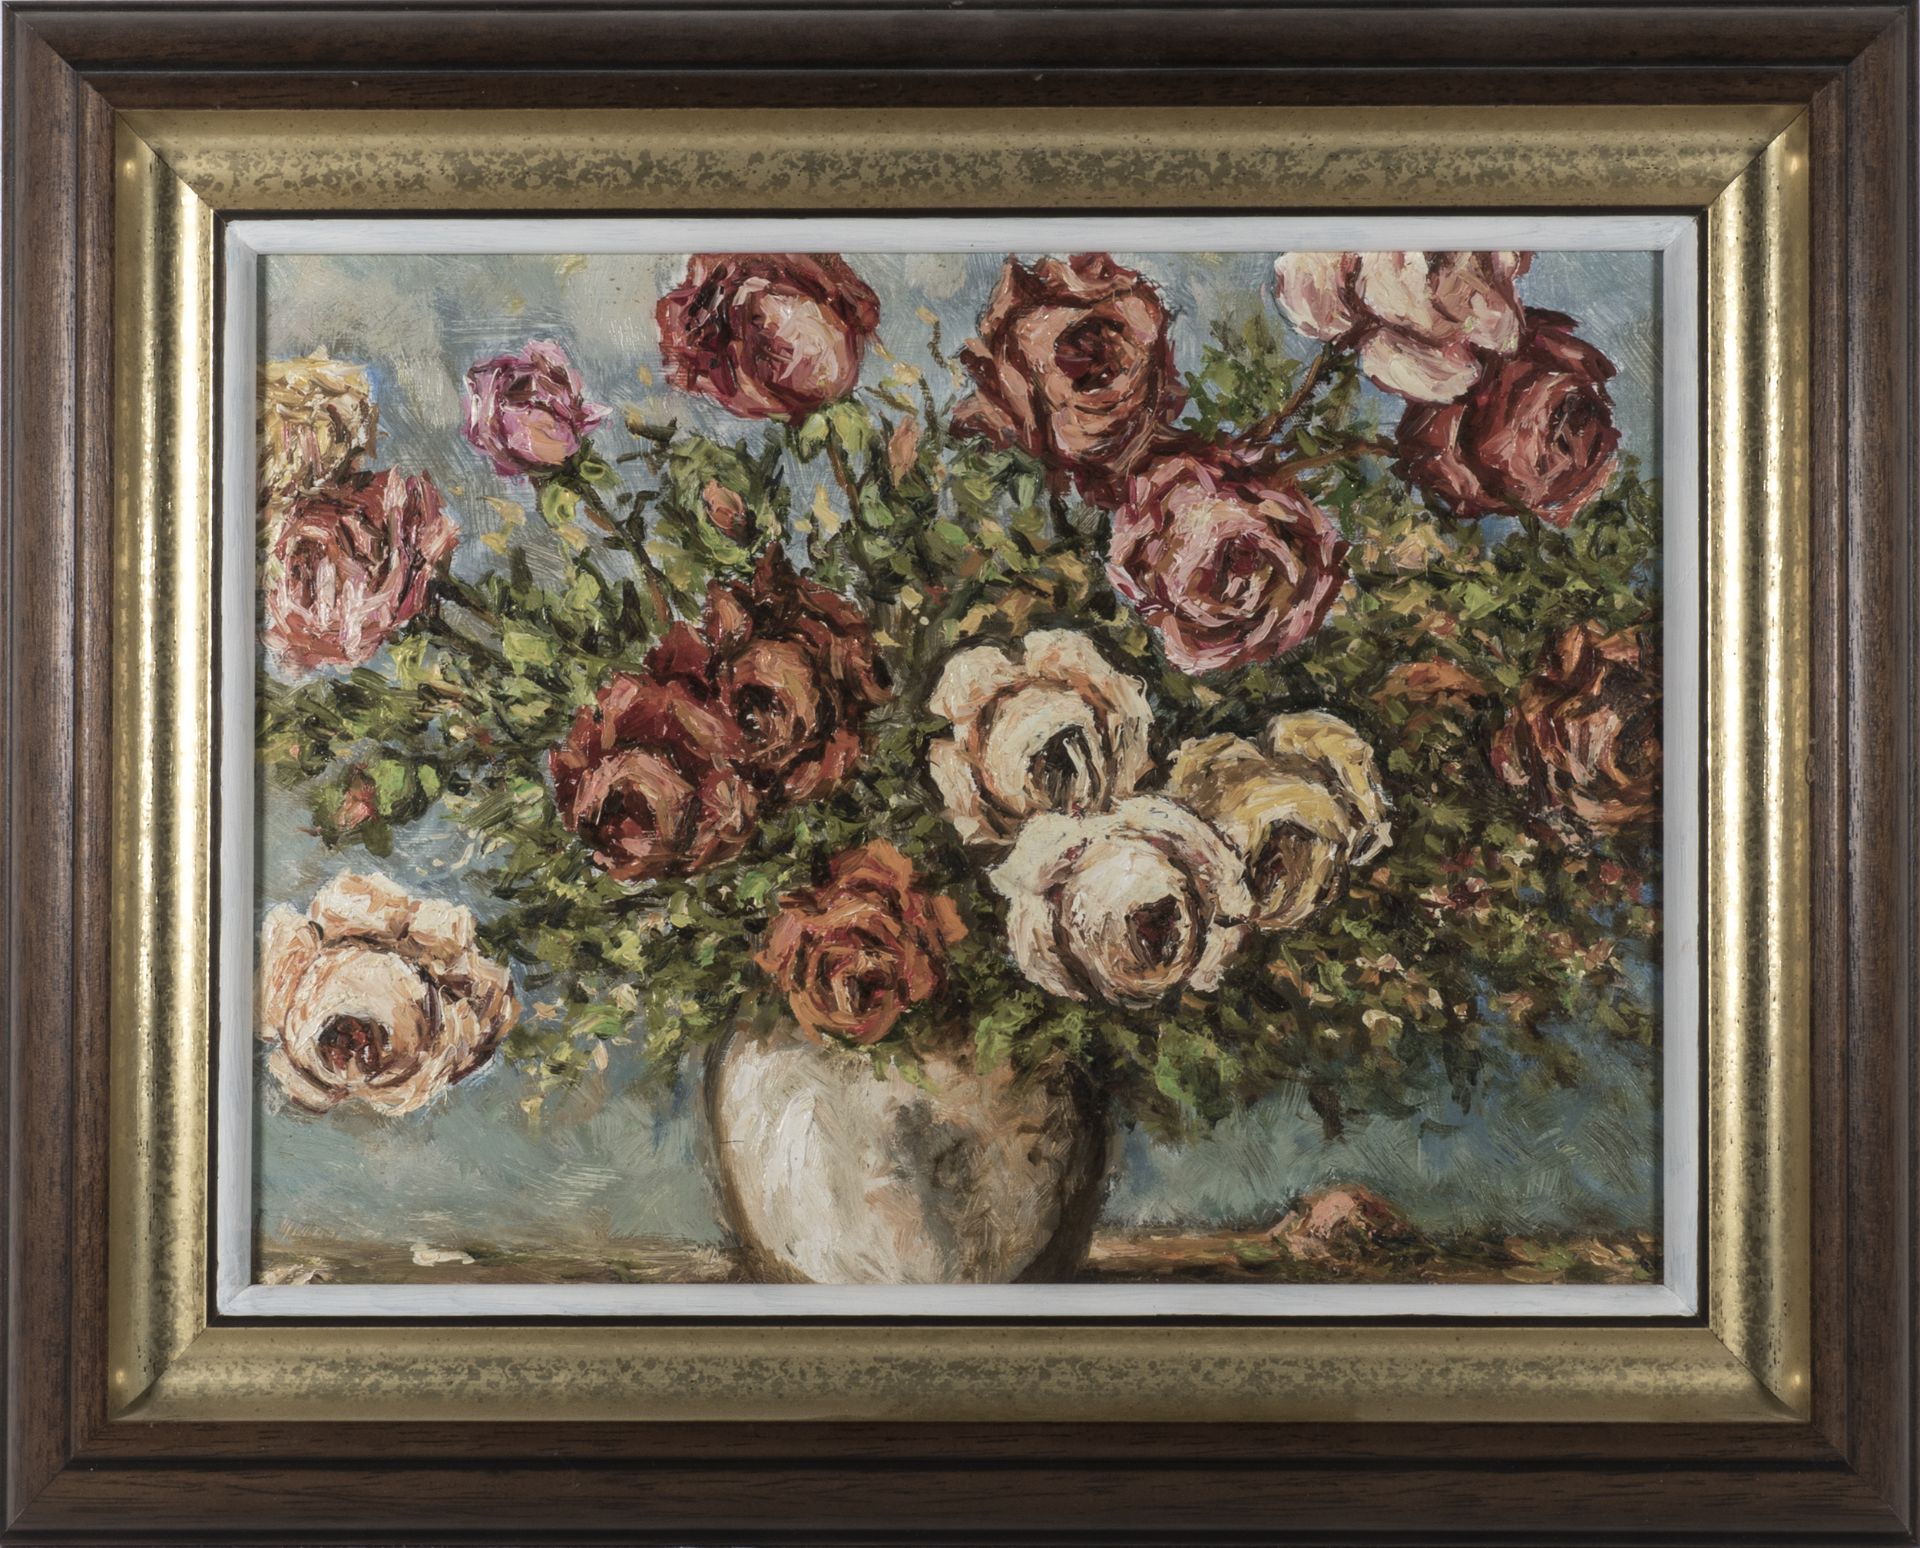 W. Griesheimer, "Rosen in heller Vase", Ölgemälde, signiert W. Griesheimer 1999. Maße: ca. 40,5 cm x